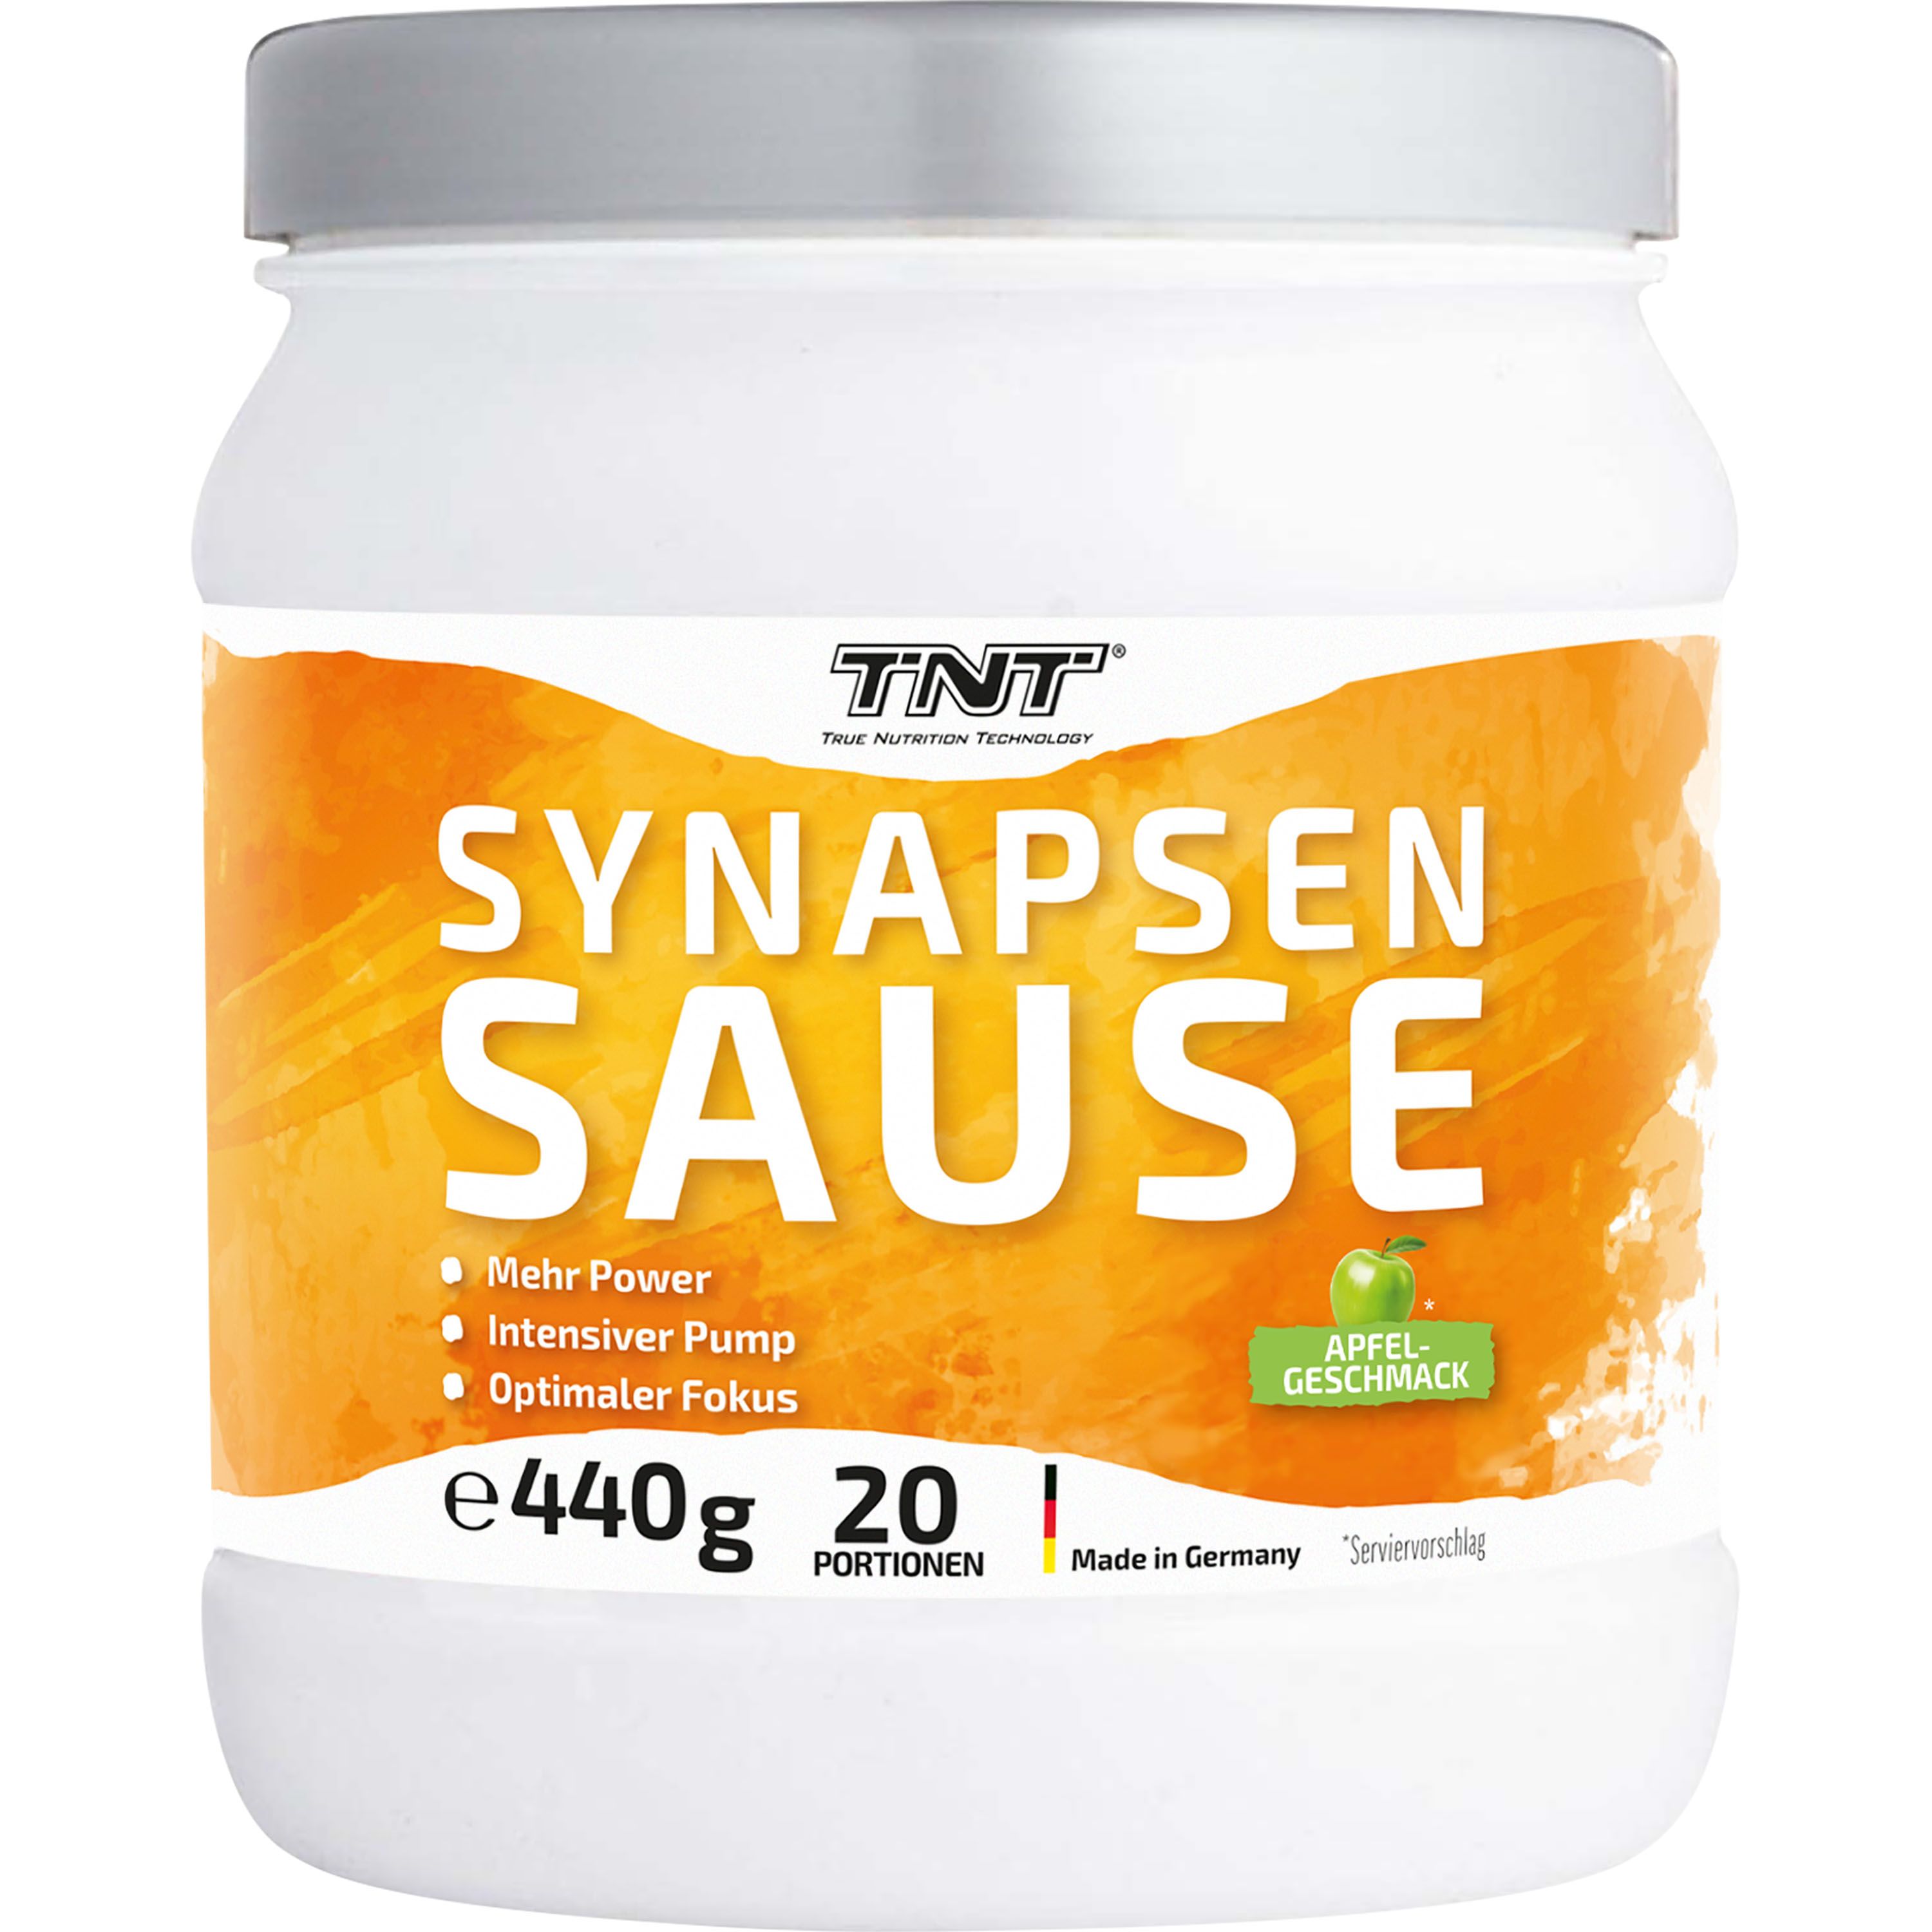 TNT Synapsensause, Trainingsbooster für Energie und Pump, für Muskelaufbau, Apfel-Geschmack